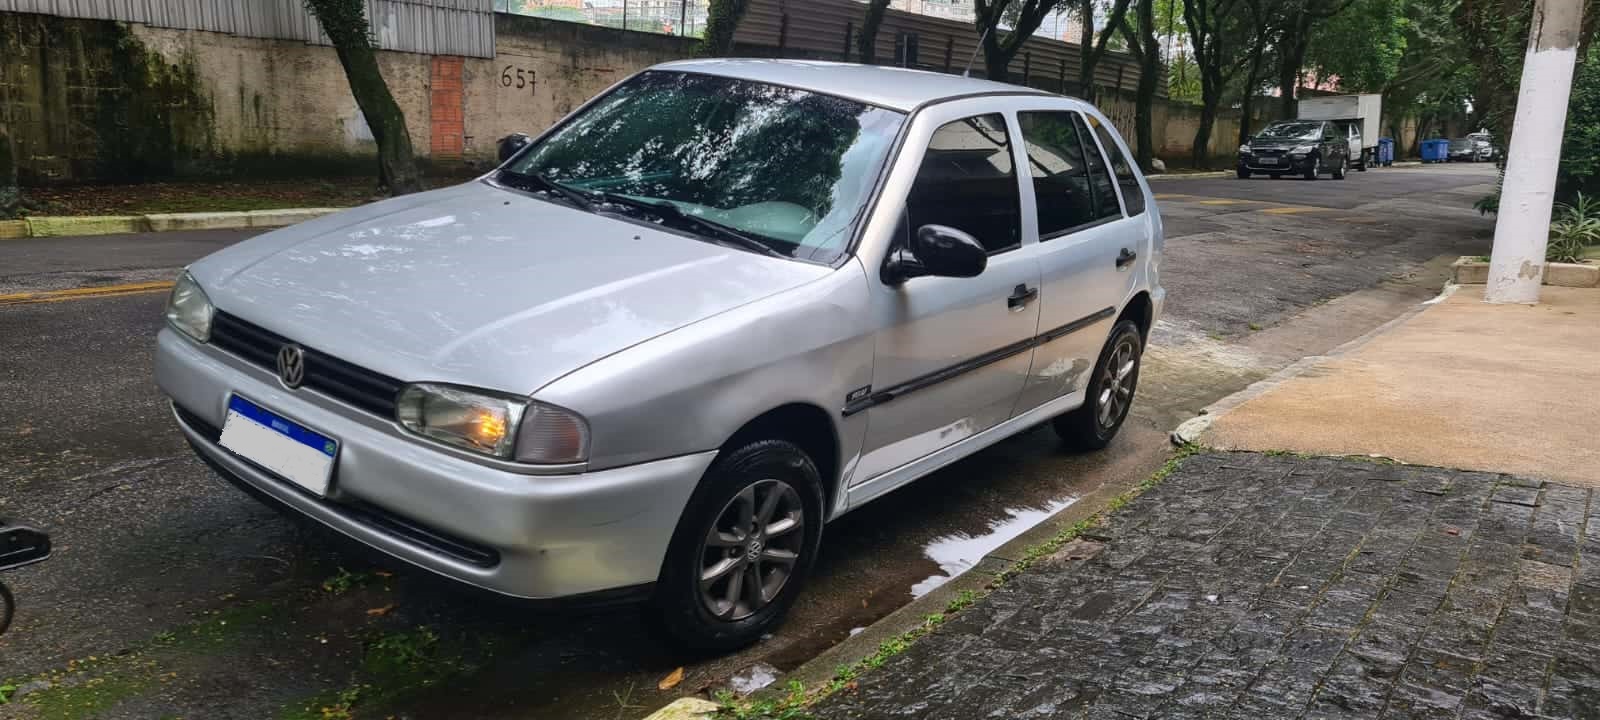 Vida Baixa Brasil: Novo Jogo de Carros Rebaixados com Favela para